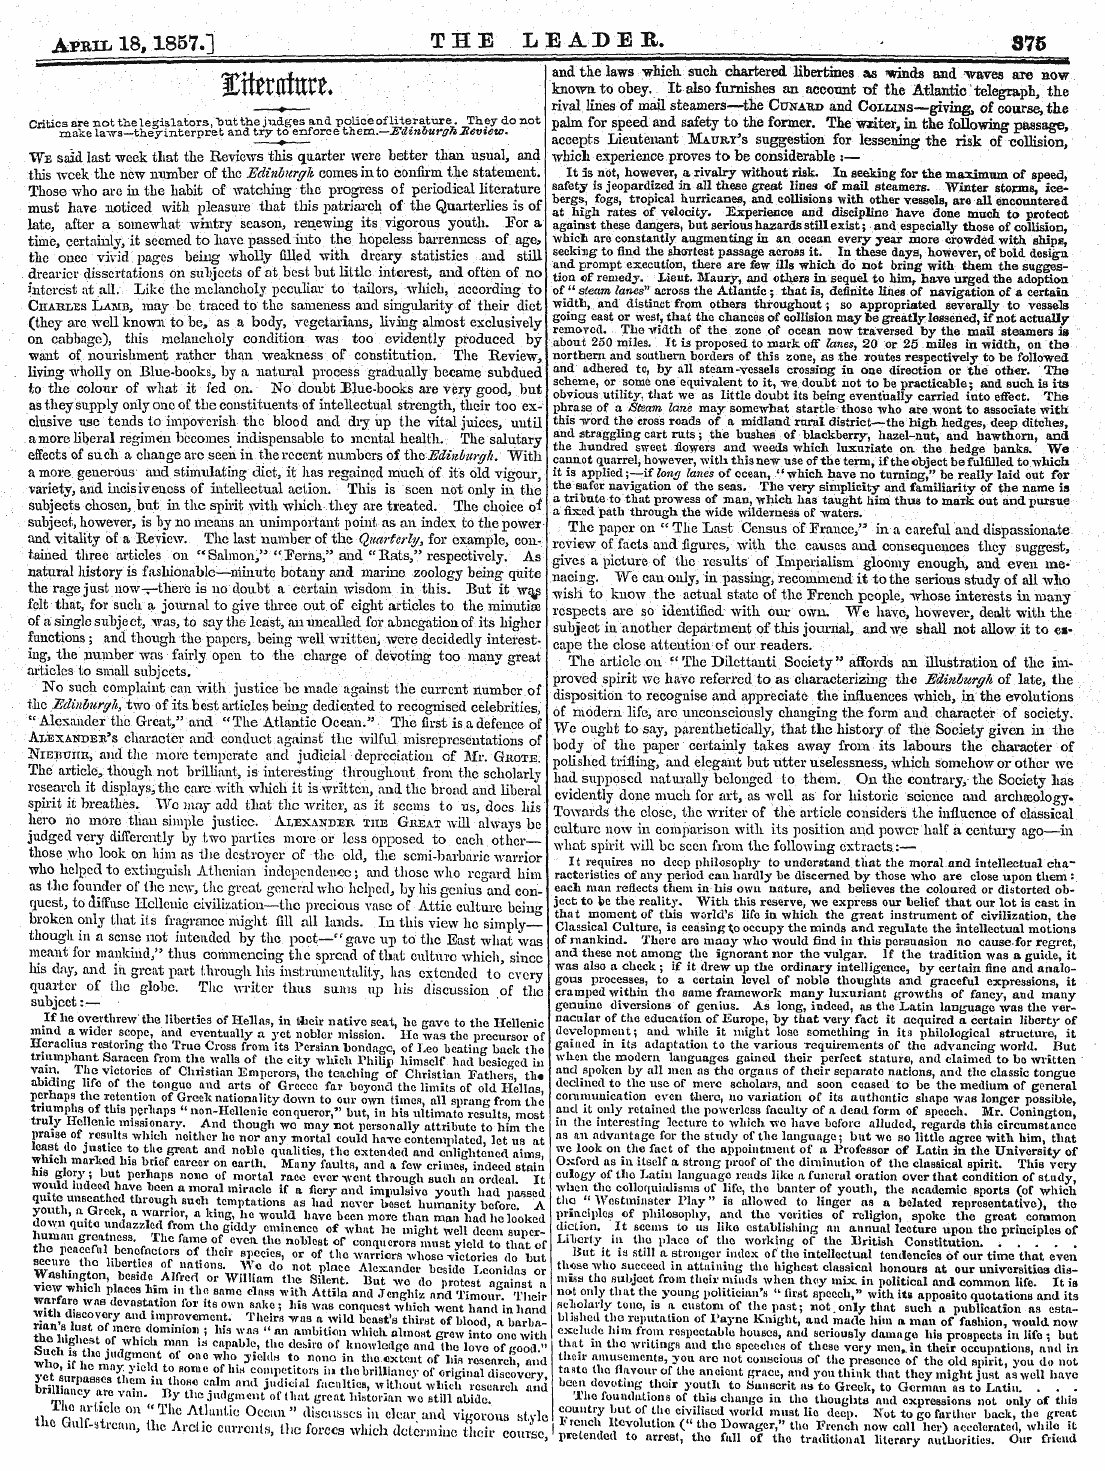 Leader (1850-1860): jS F Y, 2nd edition - . /5r Y« Lcu£Nttur£» ¦ ¦ .. ' - # ' ' "